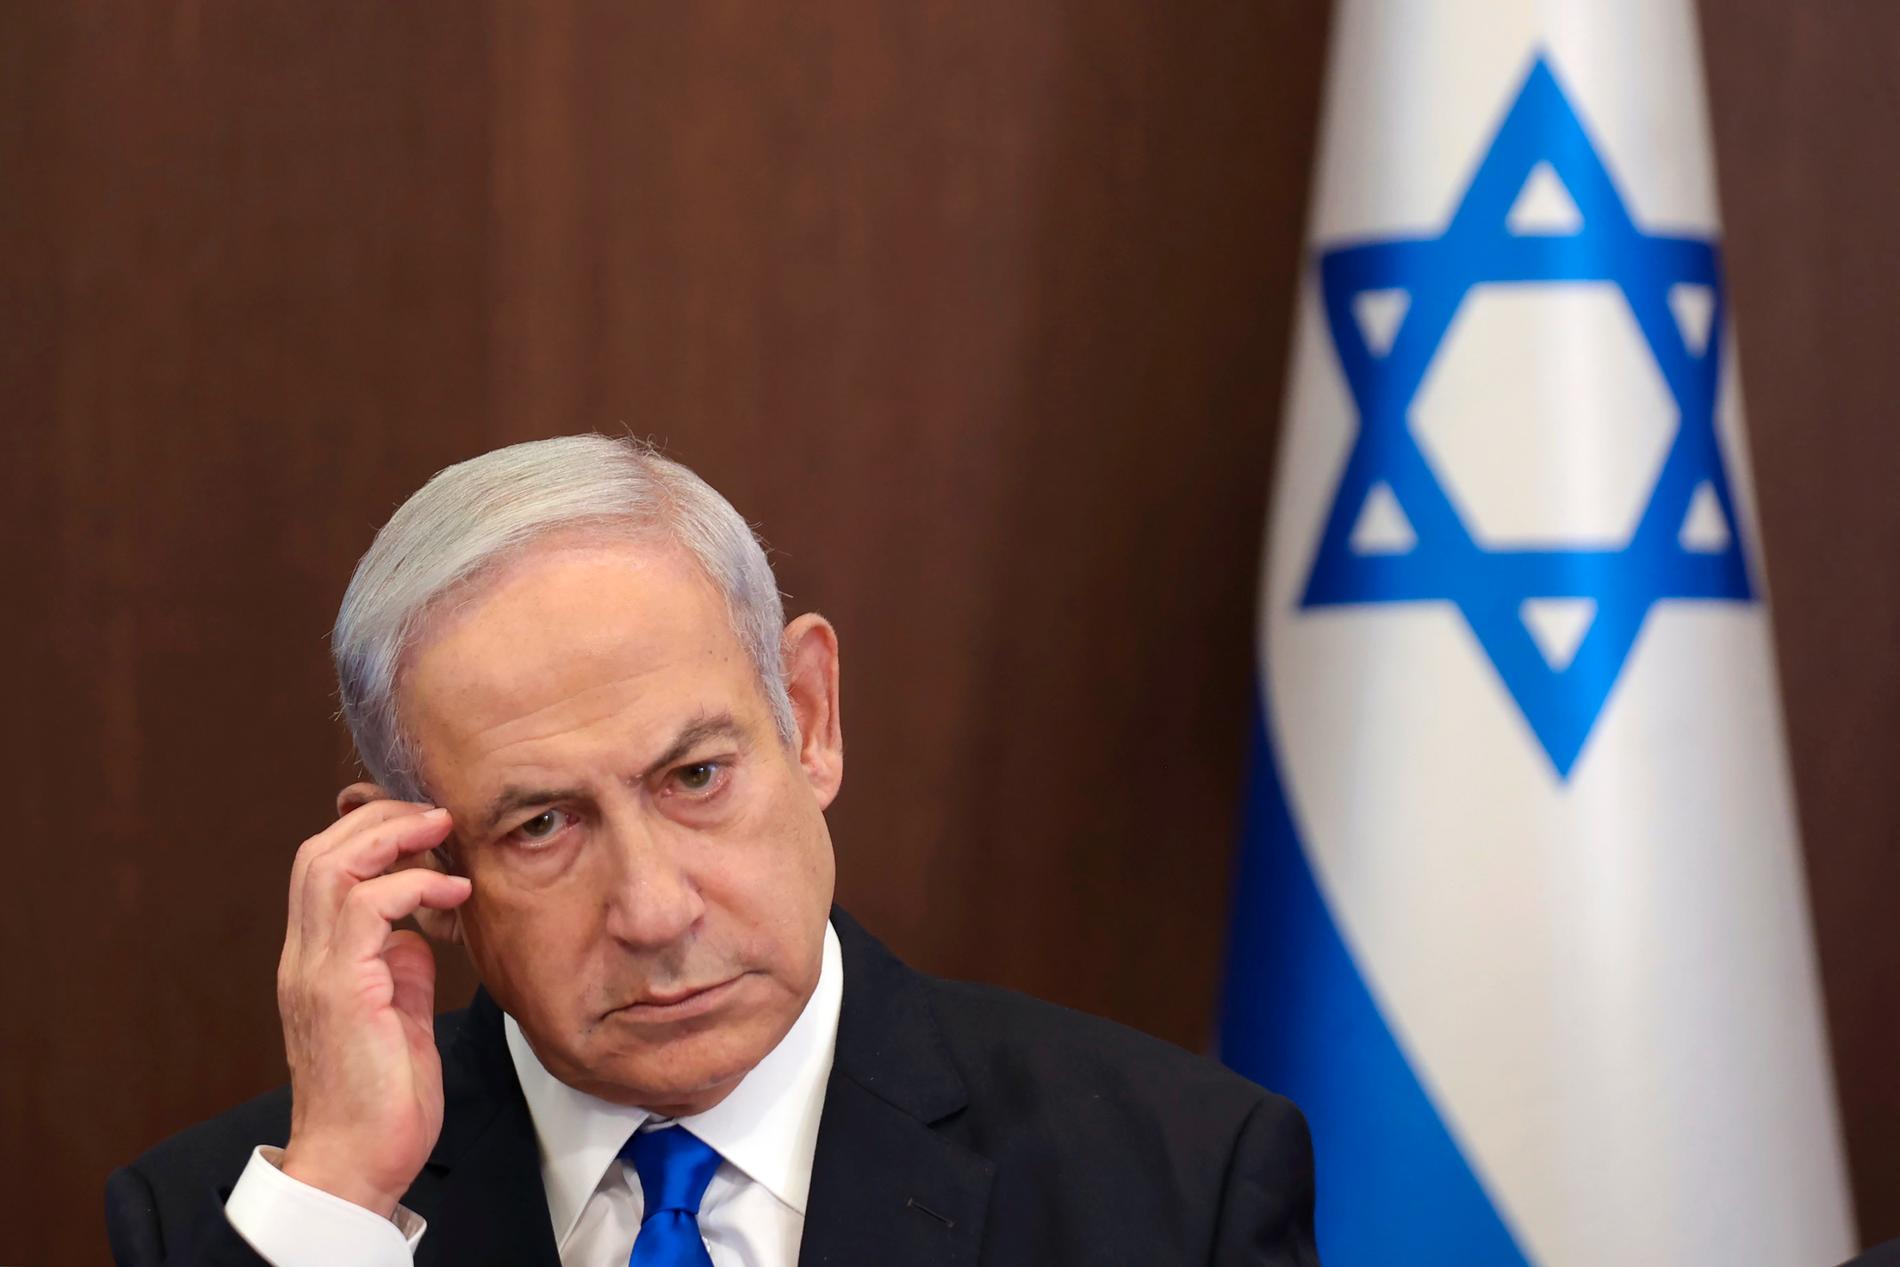 Det är först när vita, utländska hjälparbetare dödats som Netanyahu känner sig tvungen att väldigt offentligt be om ursäkt, skriver Wolfgang Hansson.